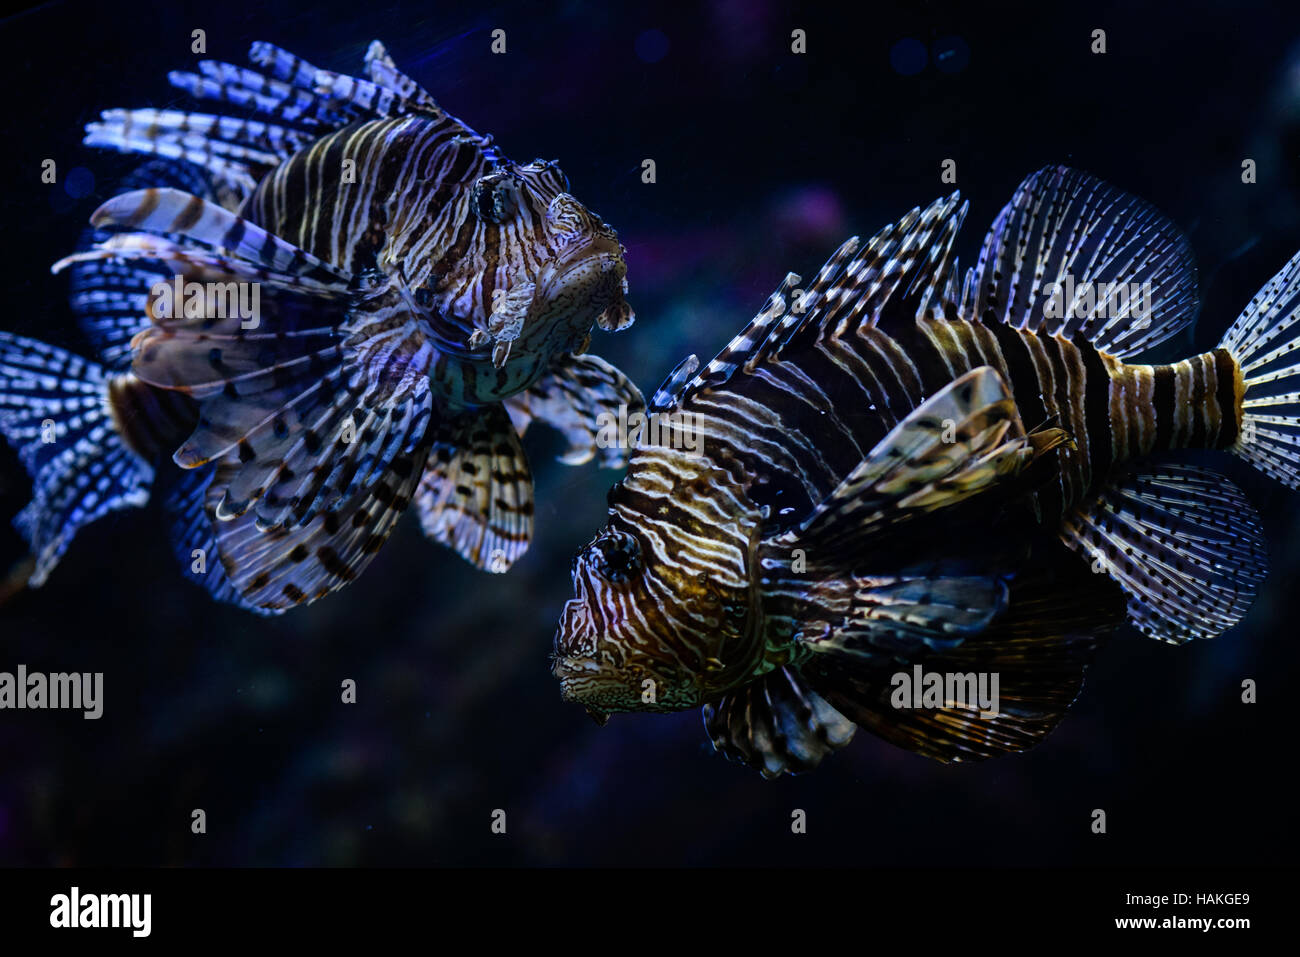 Two lion fish close up in aquarium Stock Photo